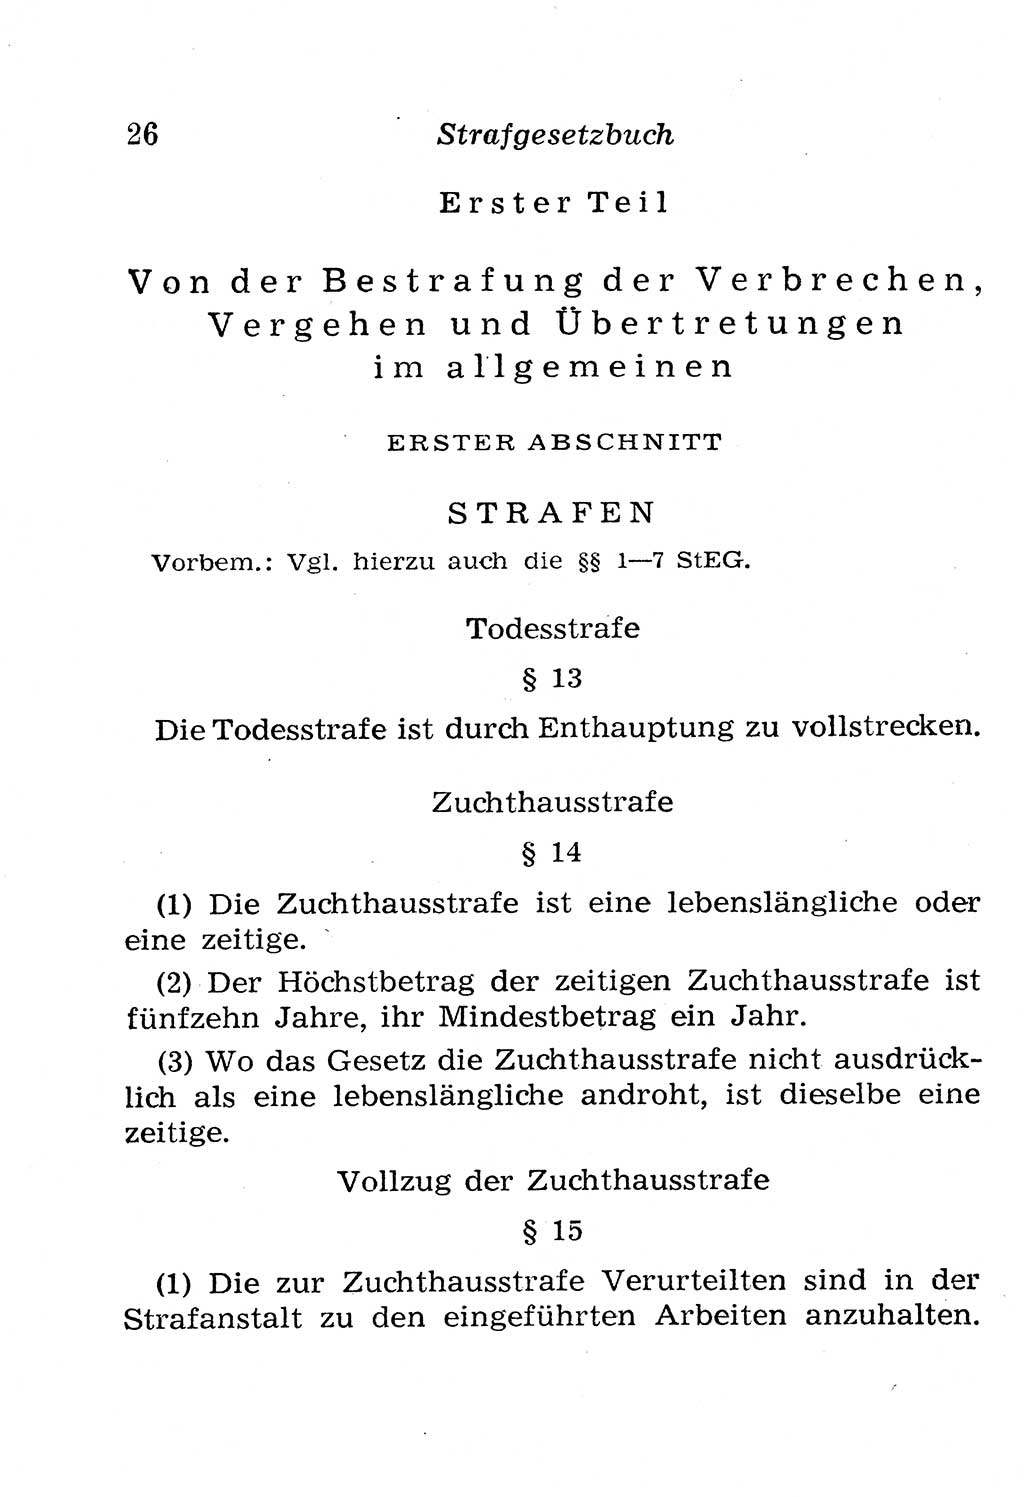 Strafgesetzbuch (StGB) und andere Strafgesetze [Deutsche Demokratische Republik (DDR)] 1958, Seite 26 (StGB Strafges. DDR 1958, S. 26)